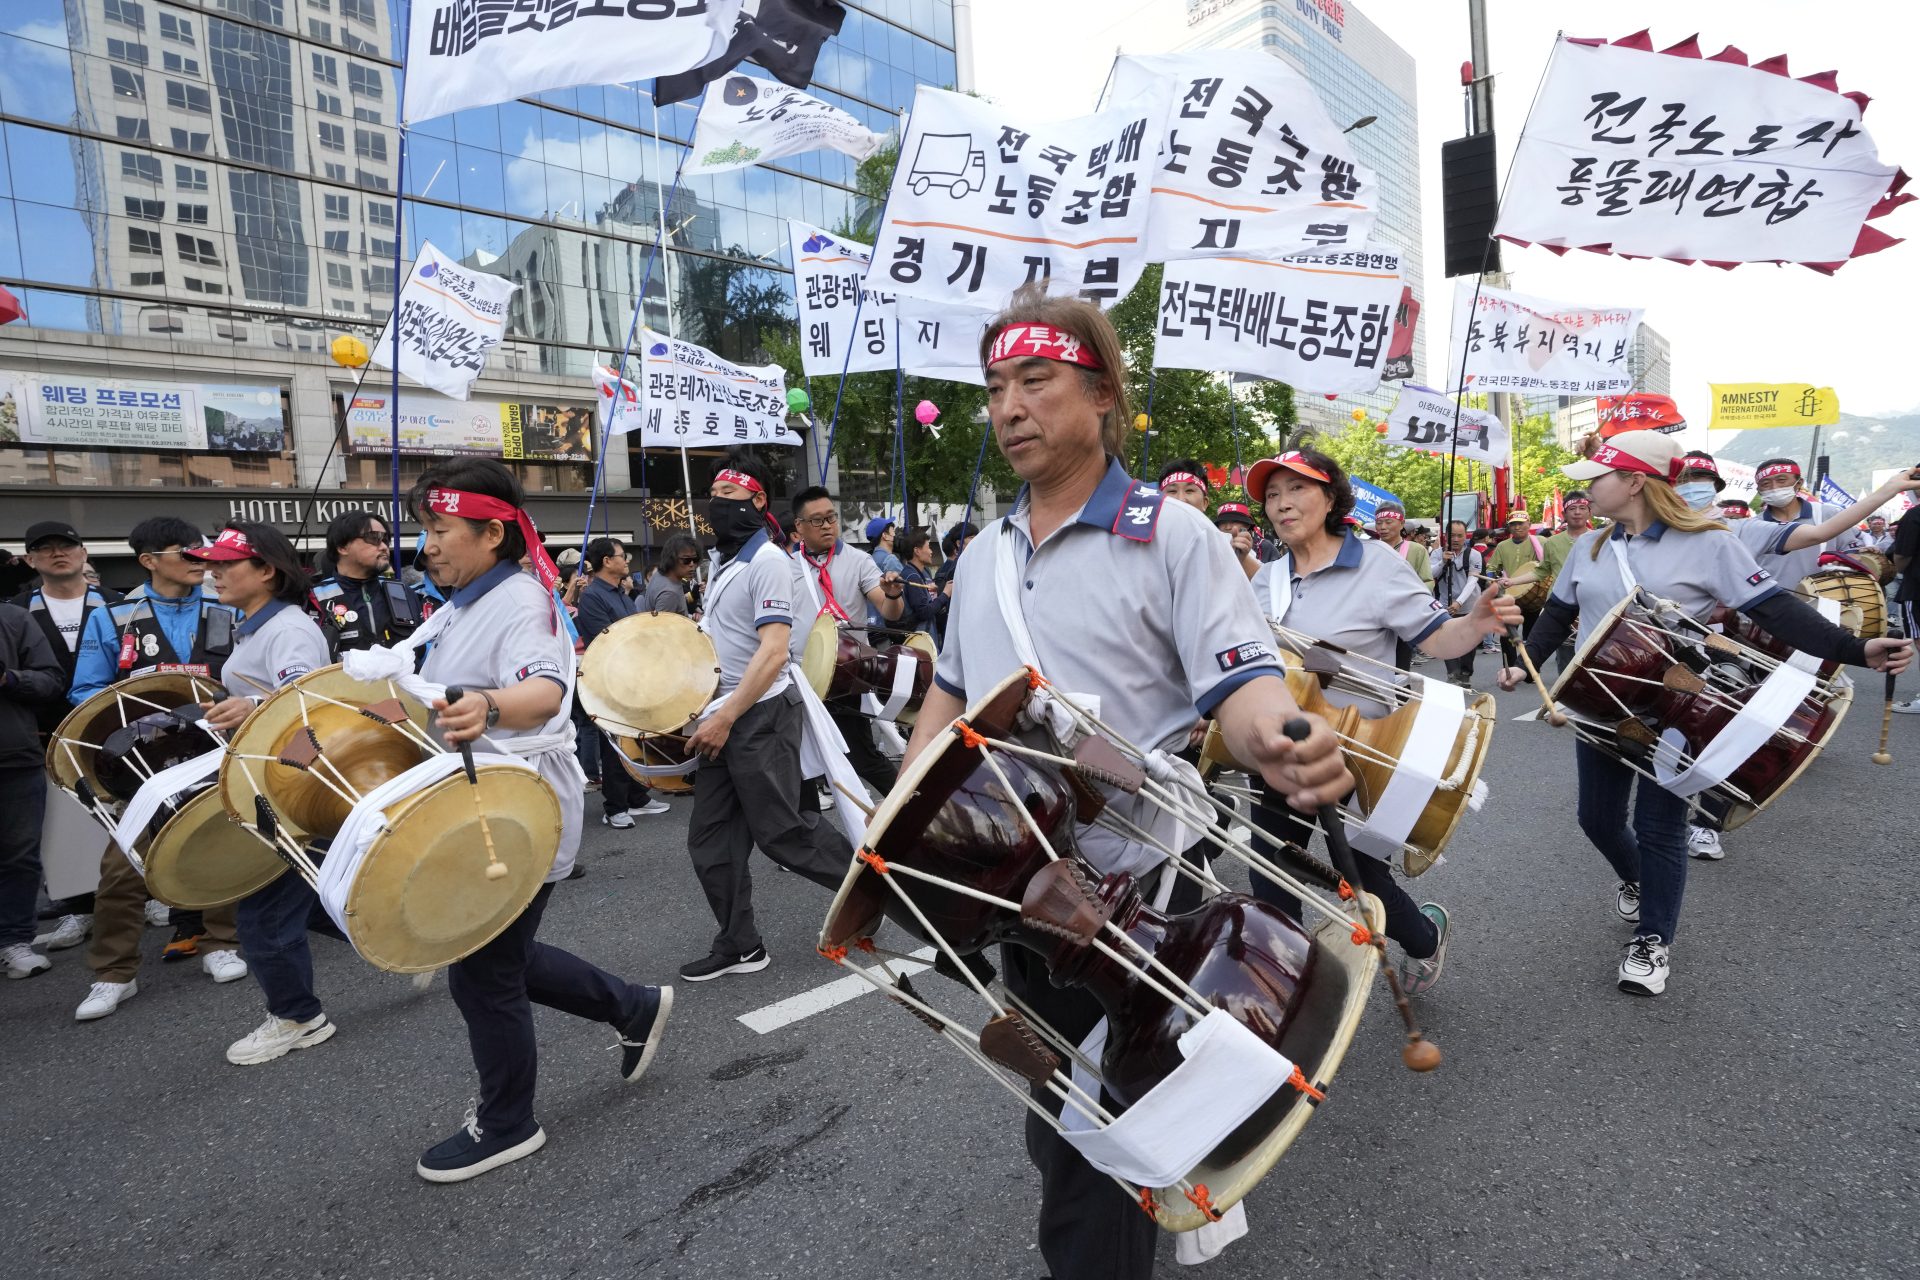 Manifestations du 1er Mai en Asie pour de meilleurs droits sociaux